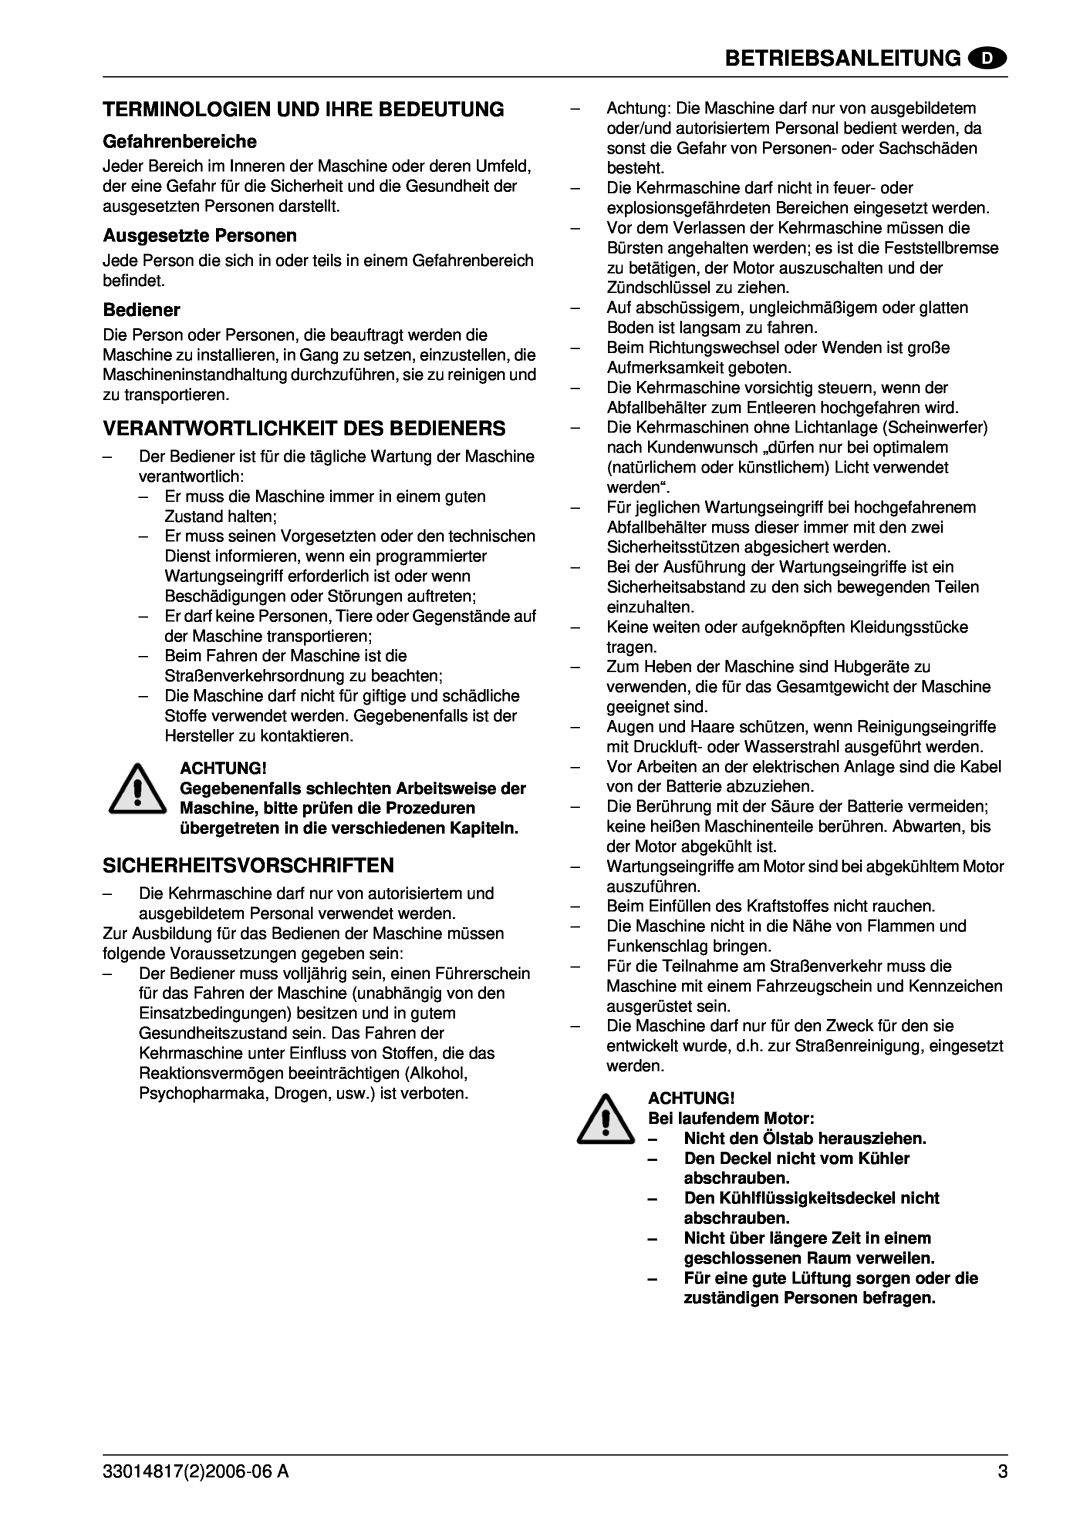 Nilfisk-ALTO SR1800C B-D Terminologien Und Ihre Bedeutung, Verantwortlichkeit Des Bedieners, Sicherheitsvorschriften 